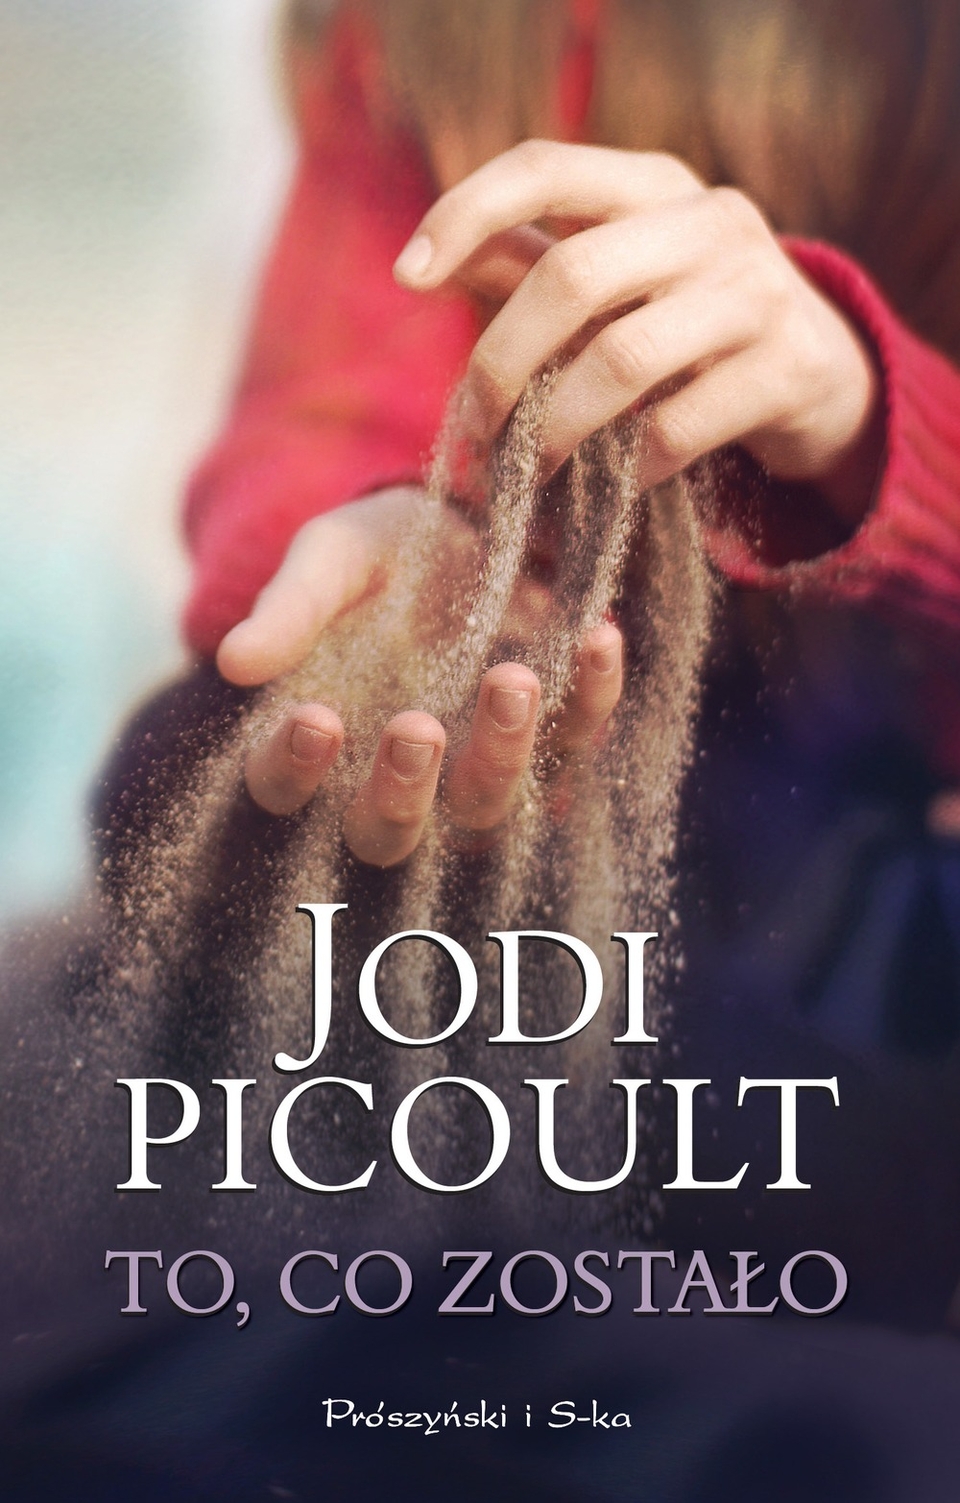 ''To, co zostało'' - Jodi Picoult - Czytelnicze recenzje